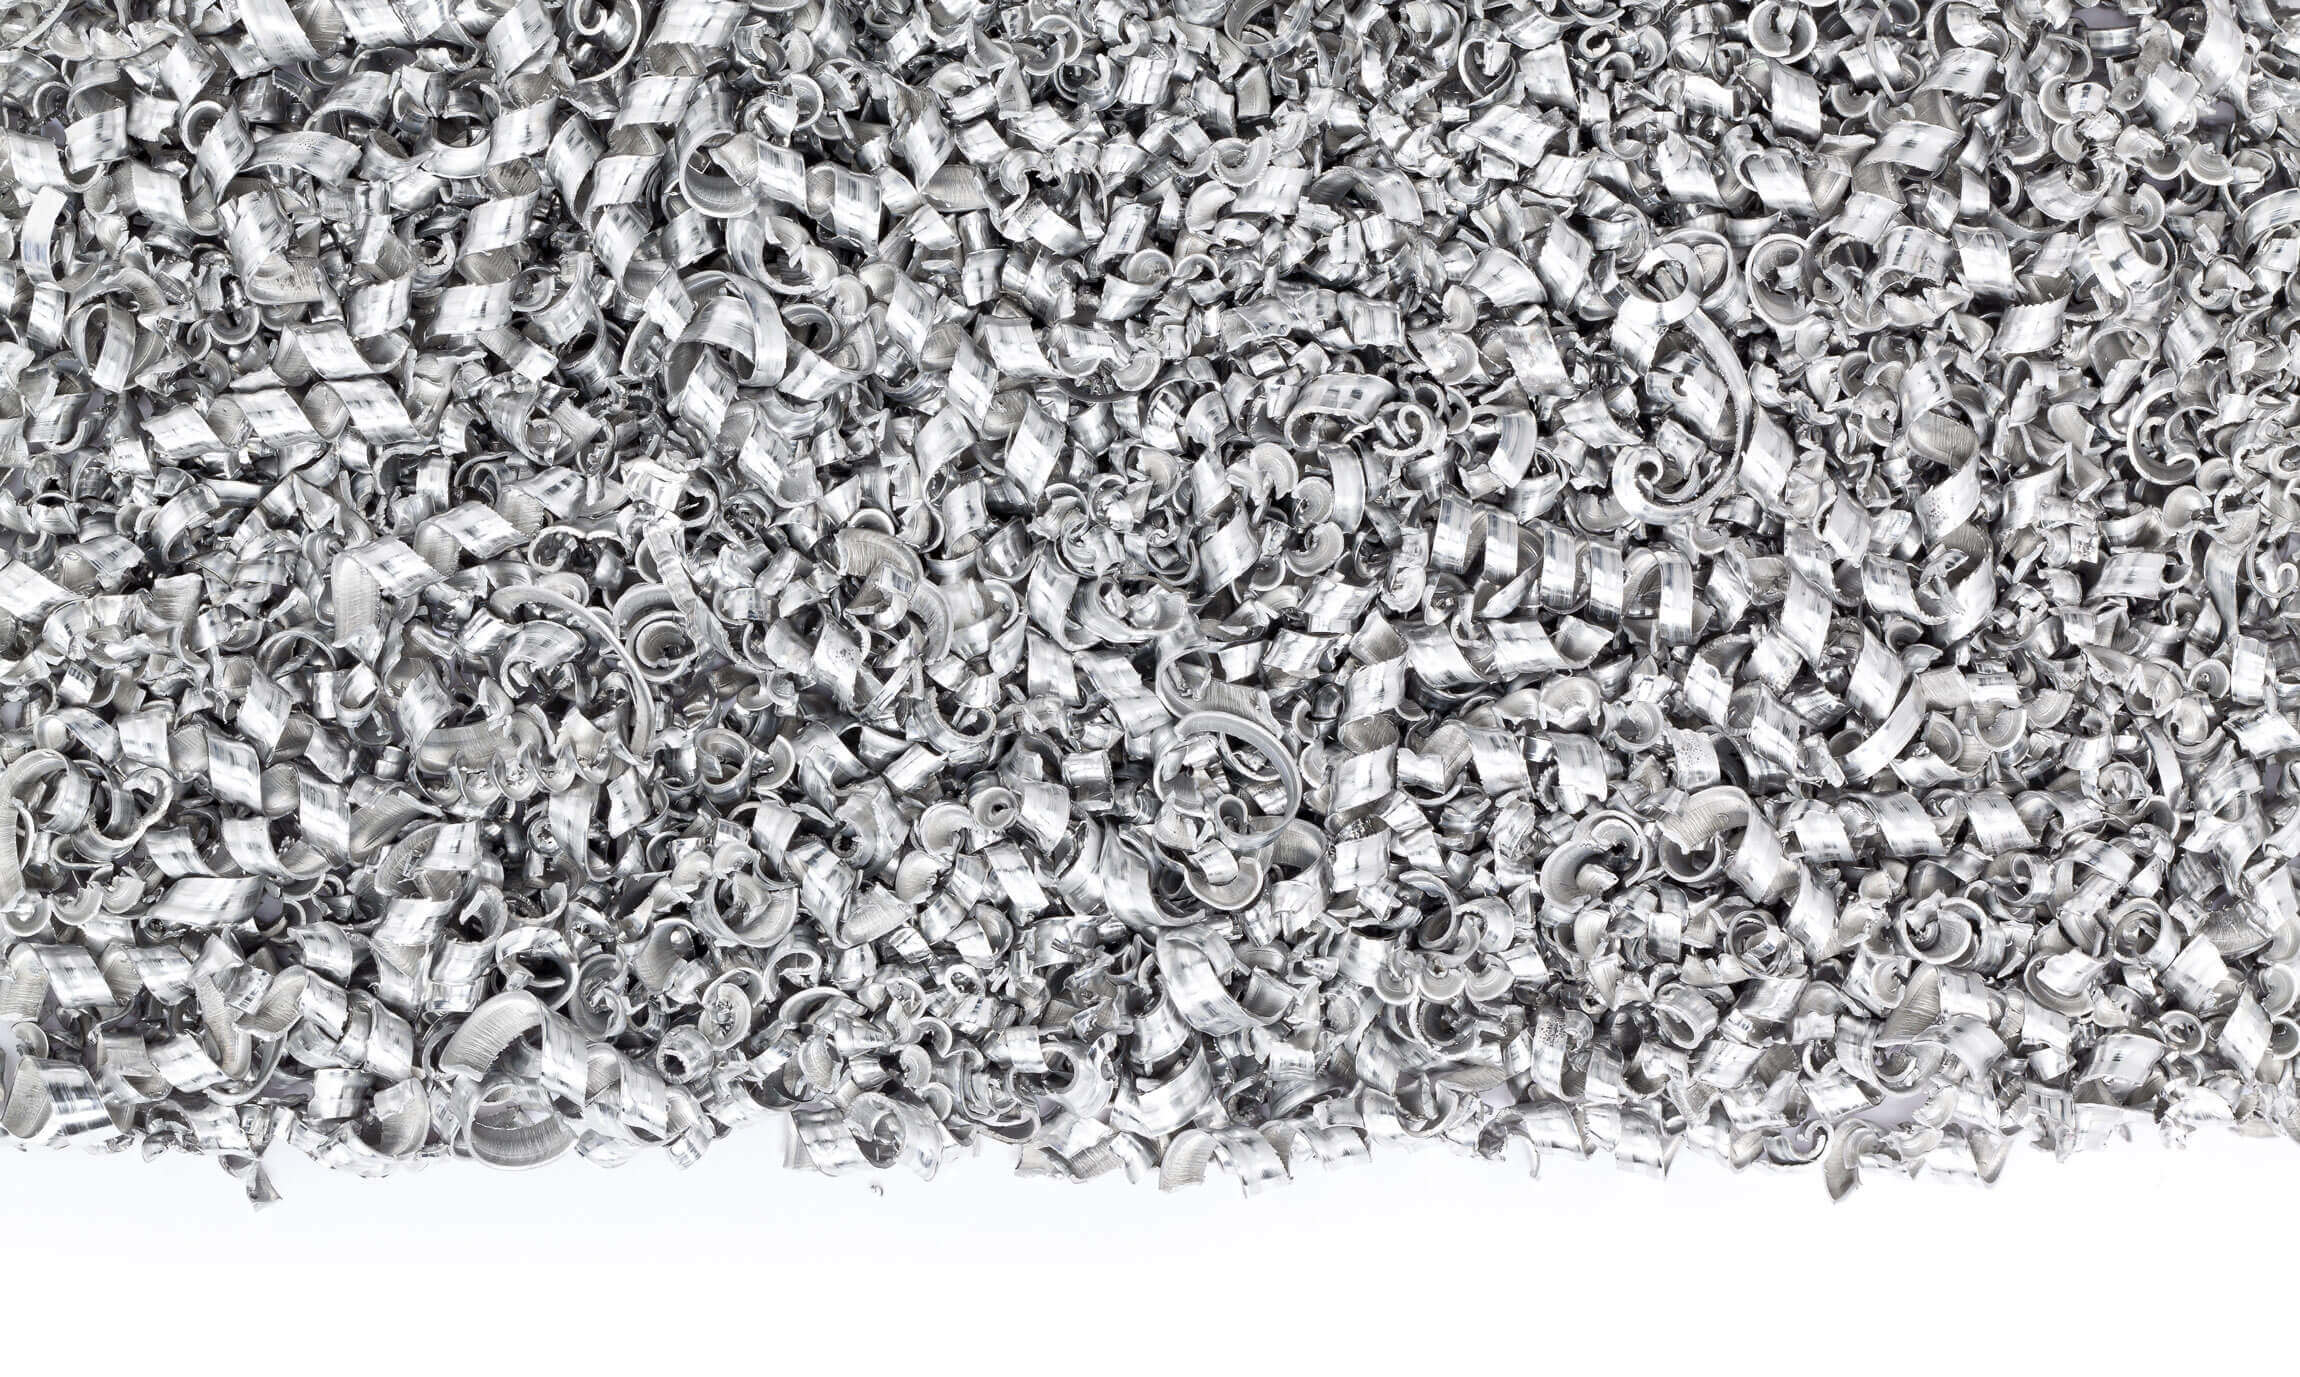 aluminium fräsabfälle aus cnc maschine